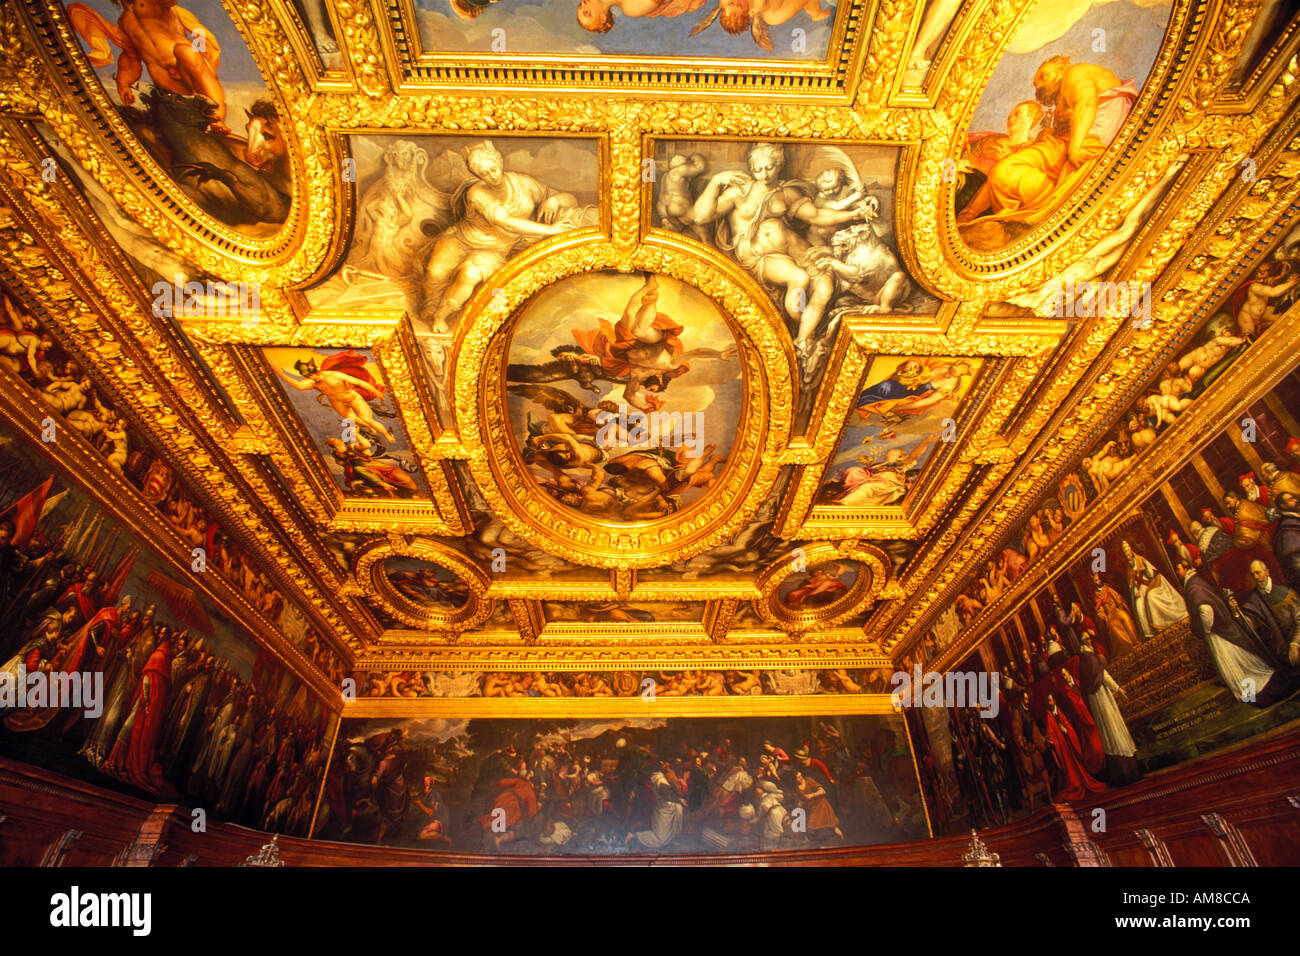 Italie Venise Le Palais des Doges vue de l'intérieur de plafond décoré Banque D'Images